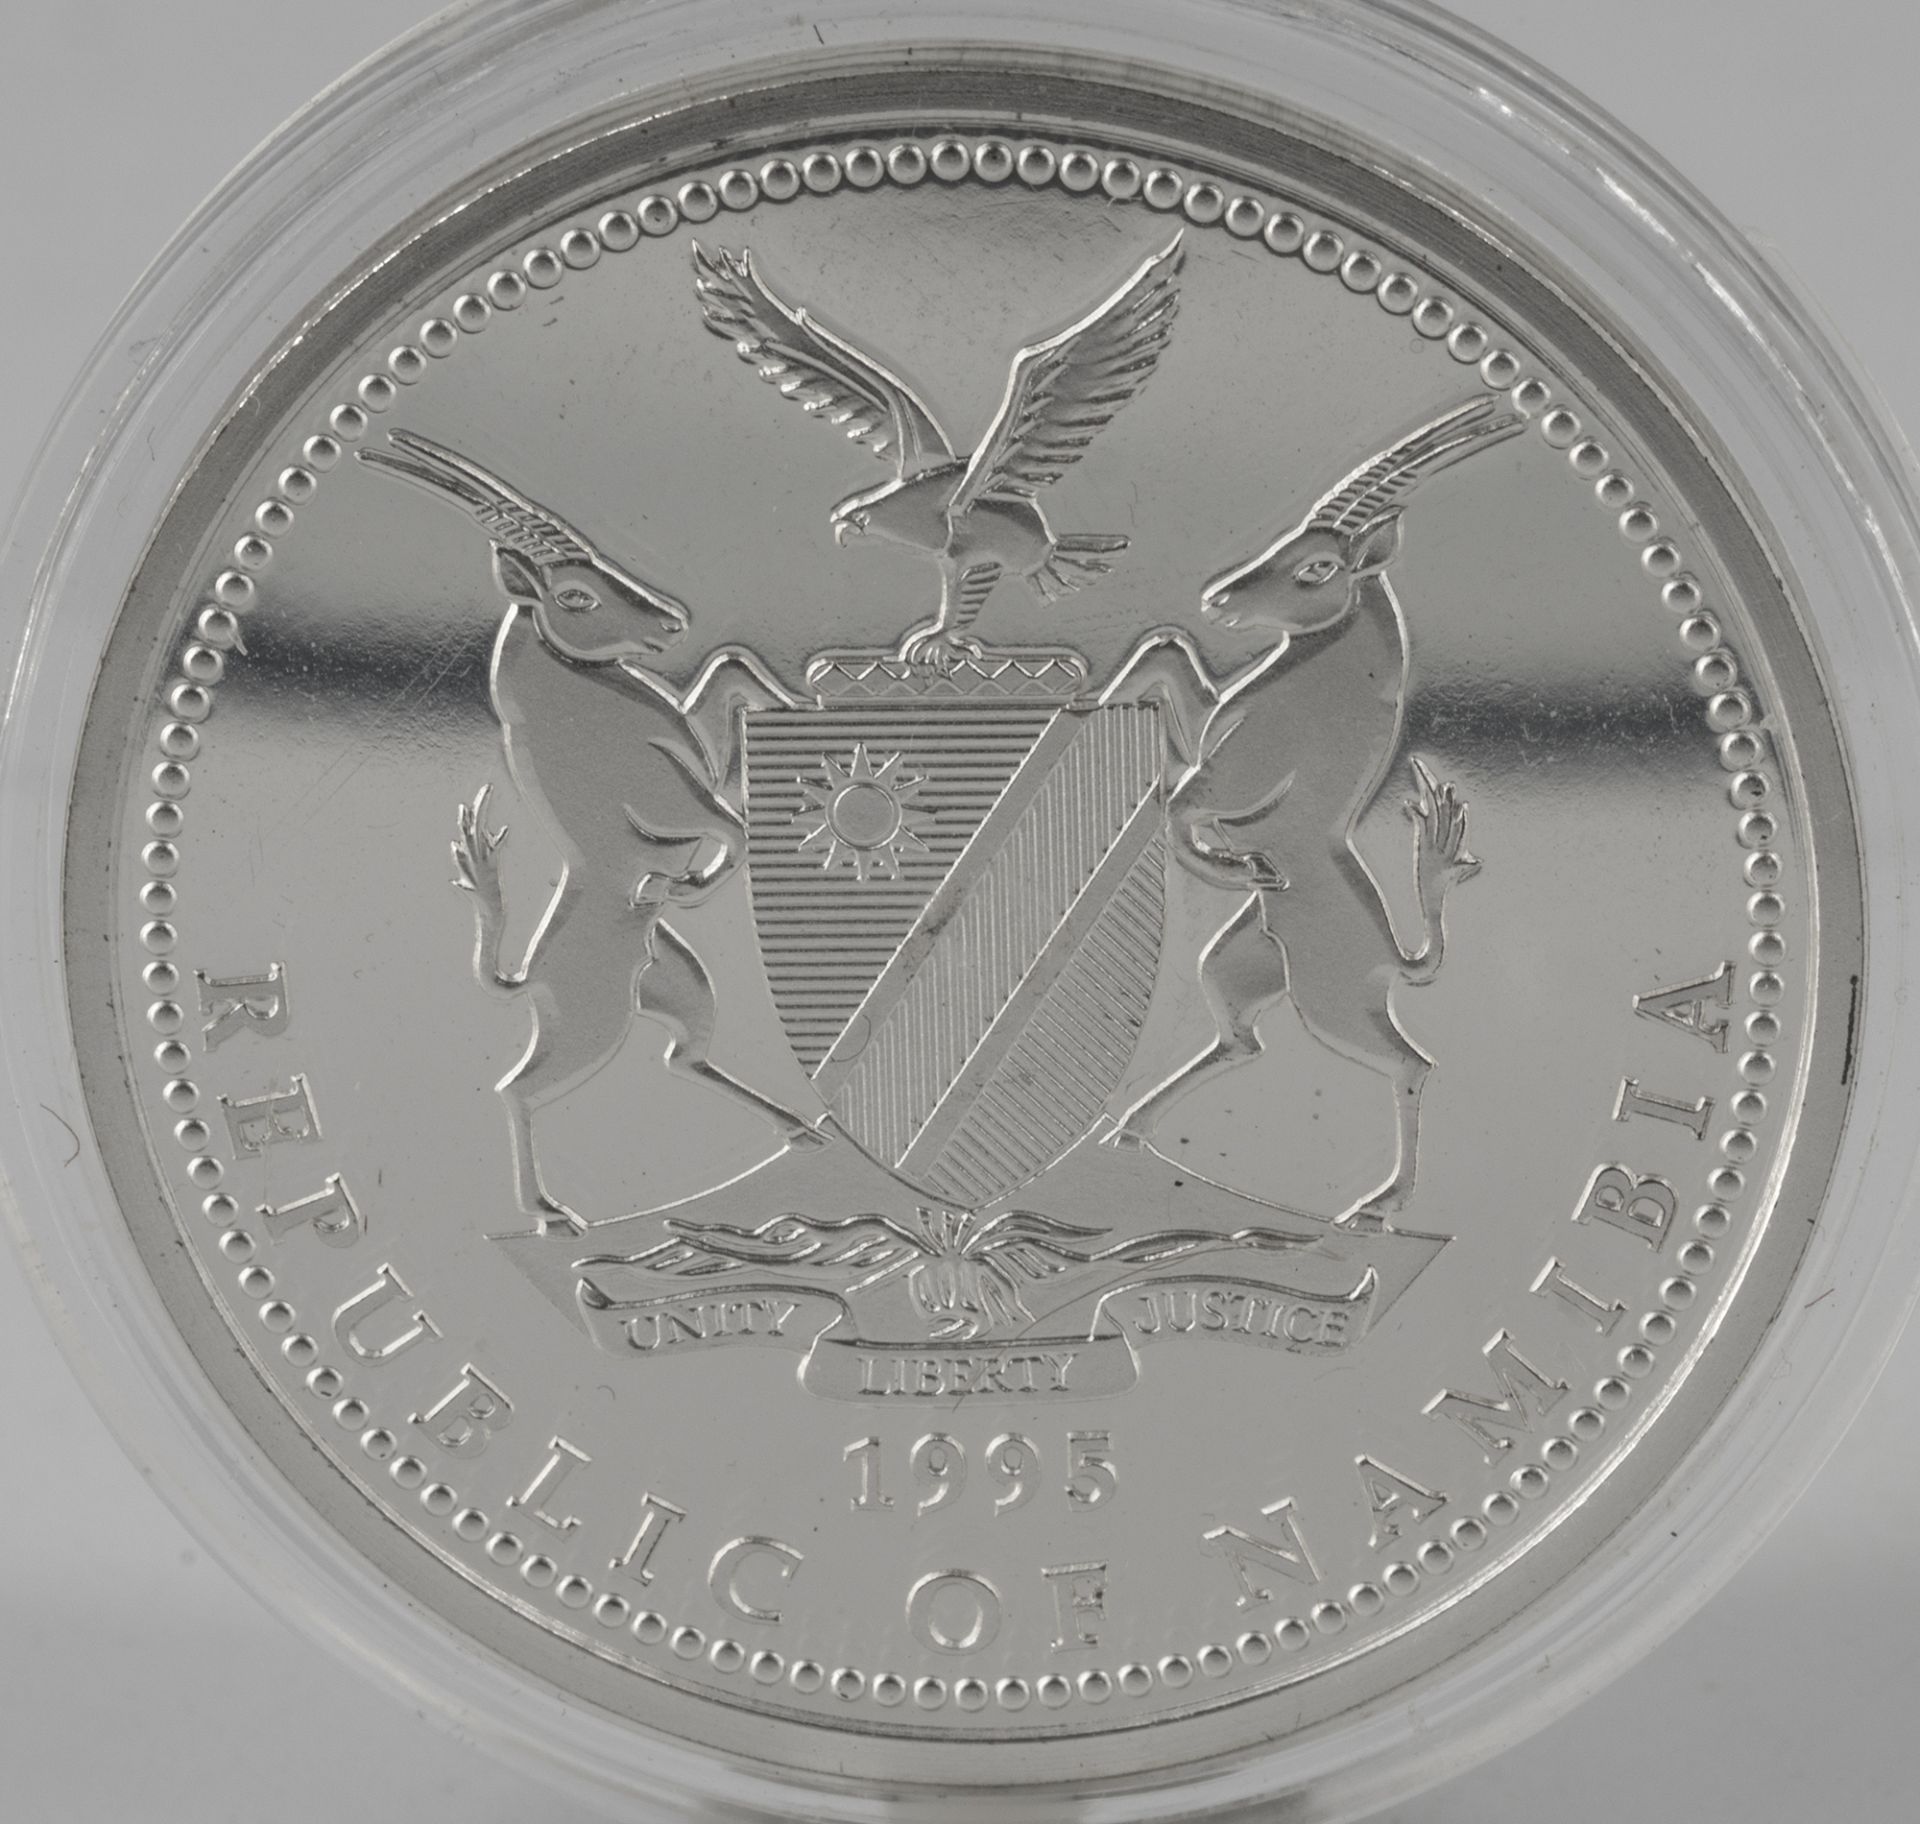 Namibia 1995, $ 10 - Farbmünze. Silber "5. Jahrestag der Unabhängigkeit". Erhaltung: PP. - Image 2 of 2